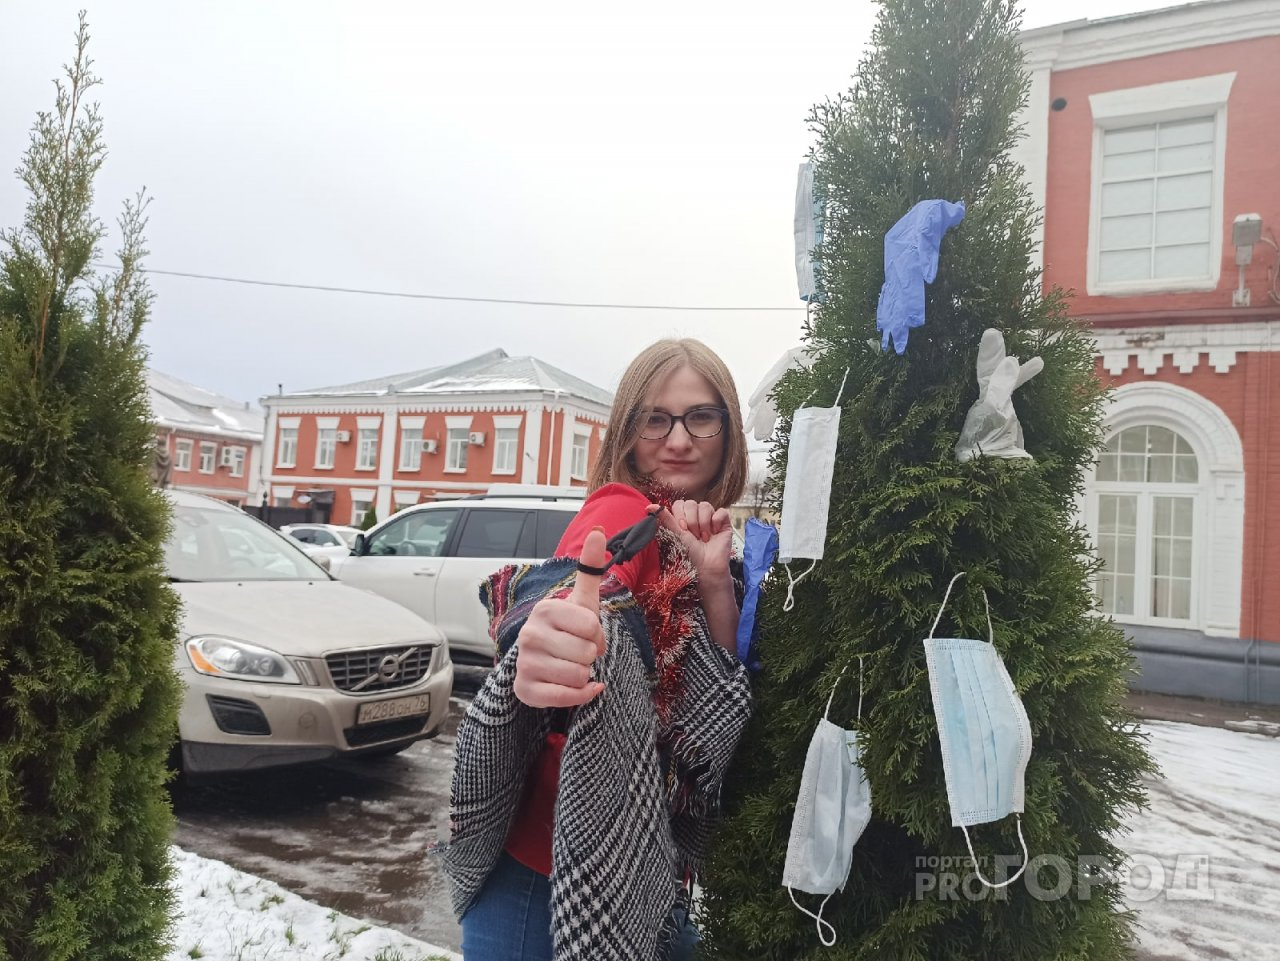 Ковидный Новый год в Ярославле: три способа отметить дома весело